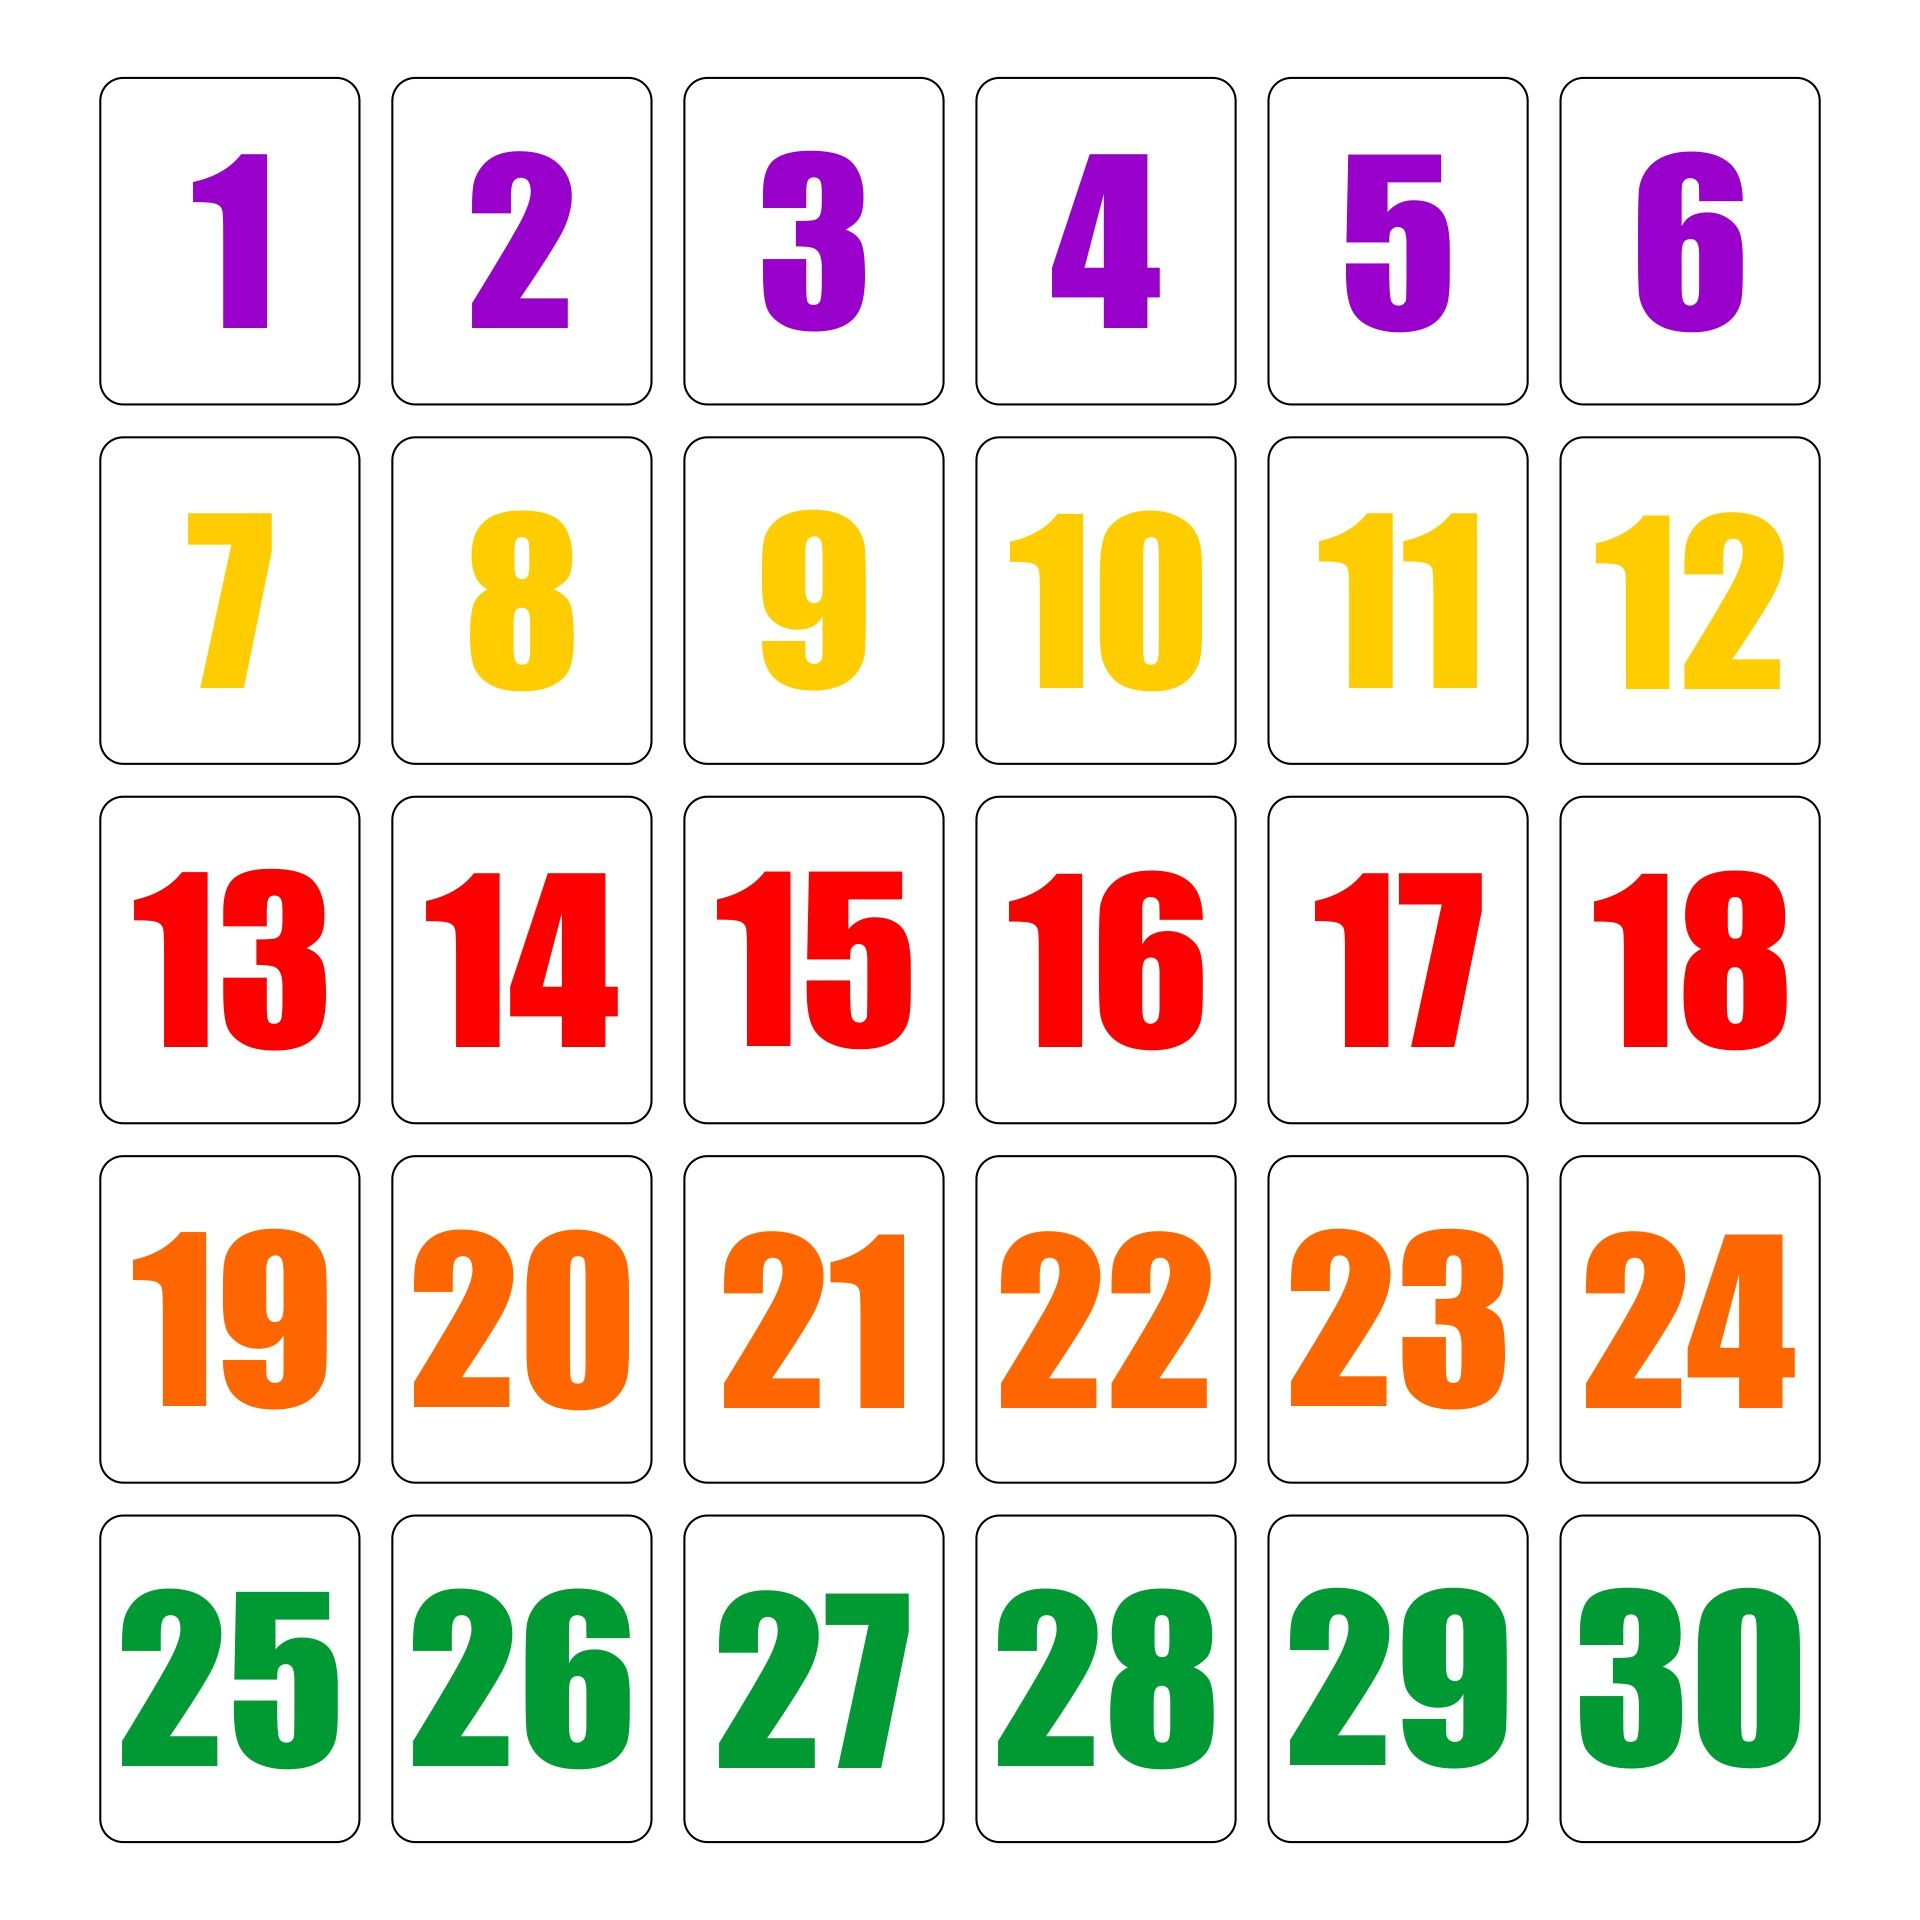 Printable Number Cards 1 30 | Printable Numbers, Writing Aids - Free Printable Number Cards 1-30